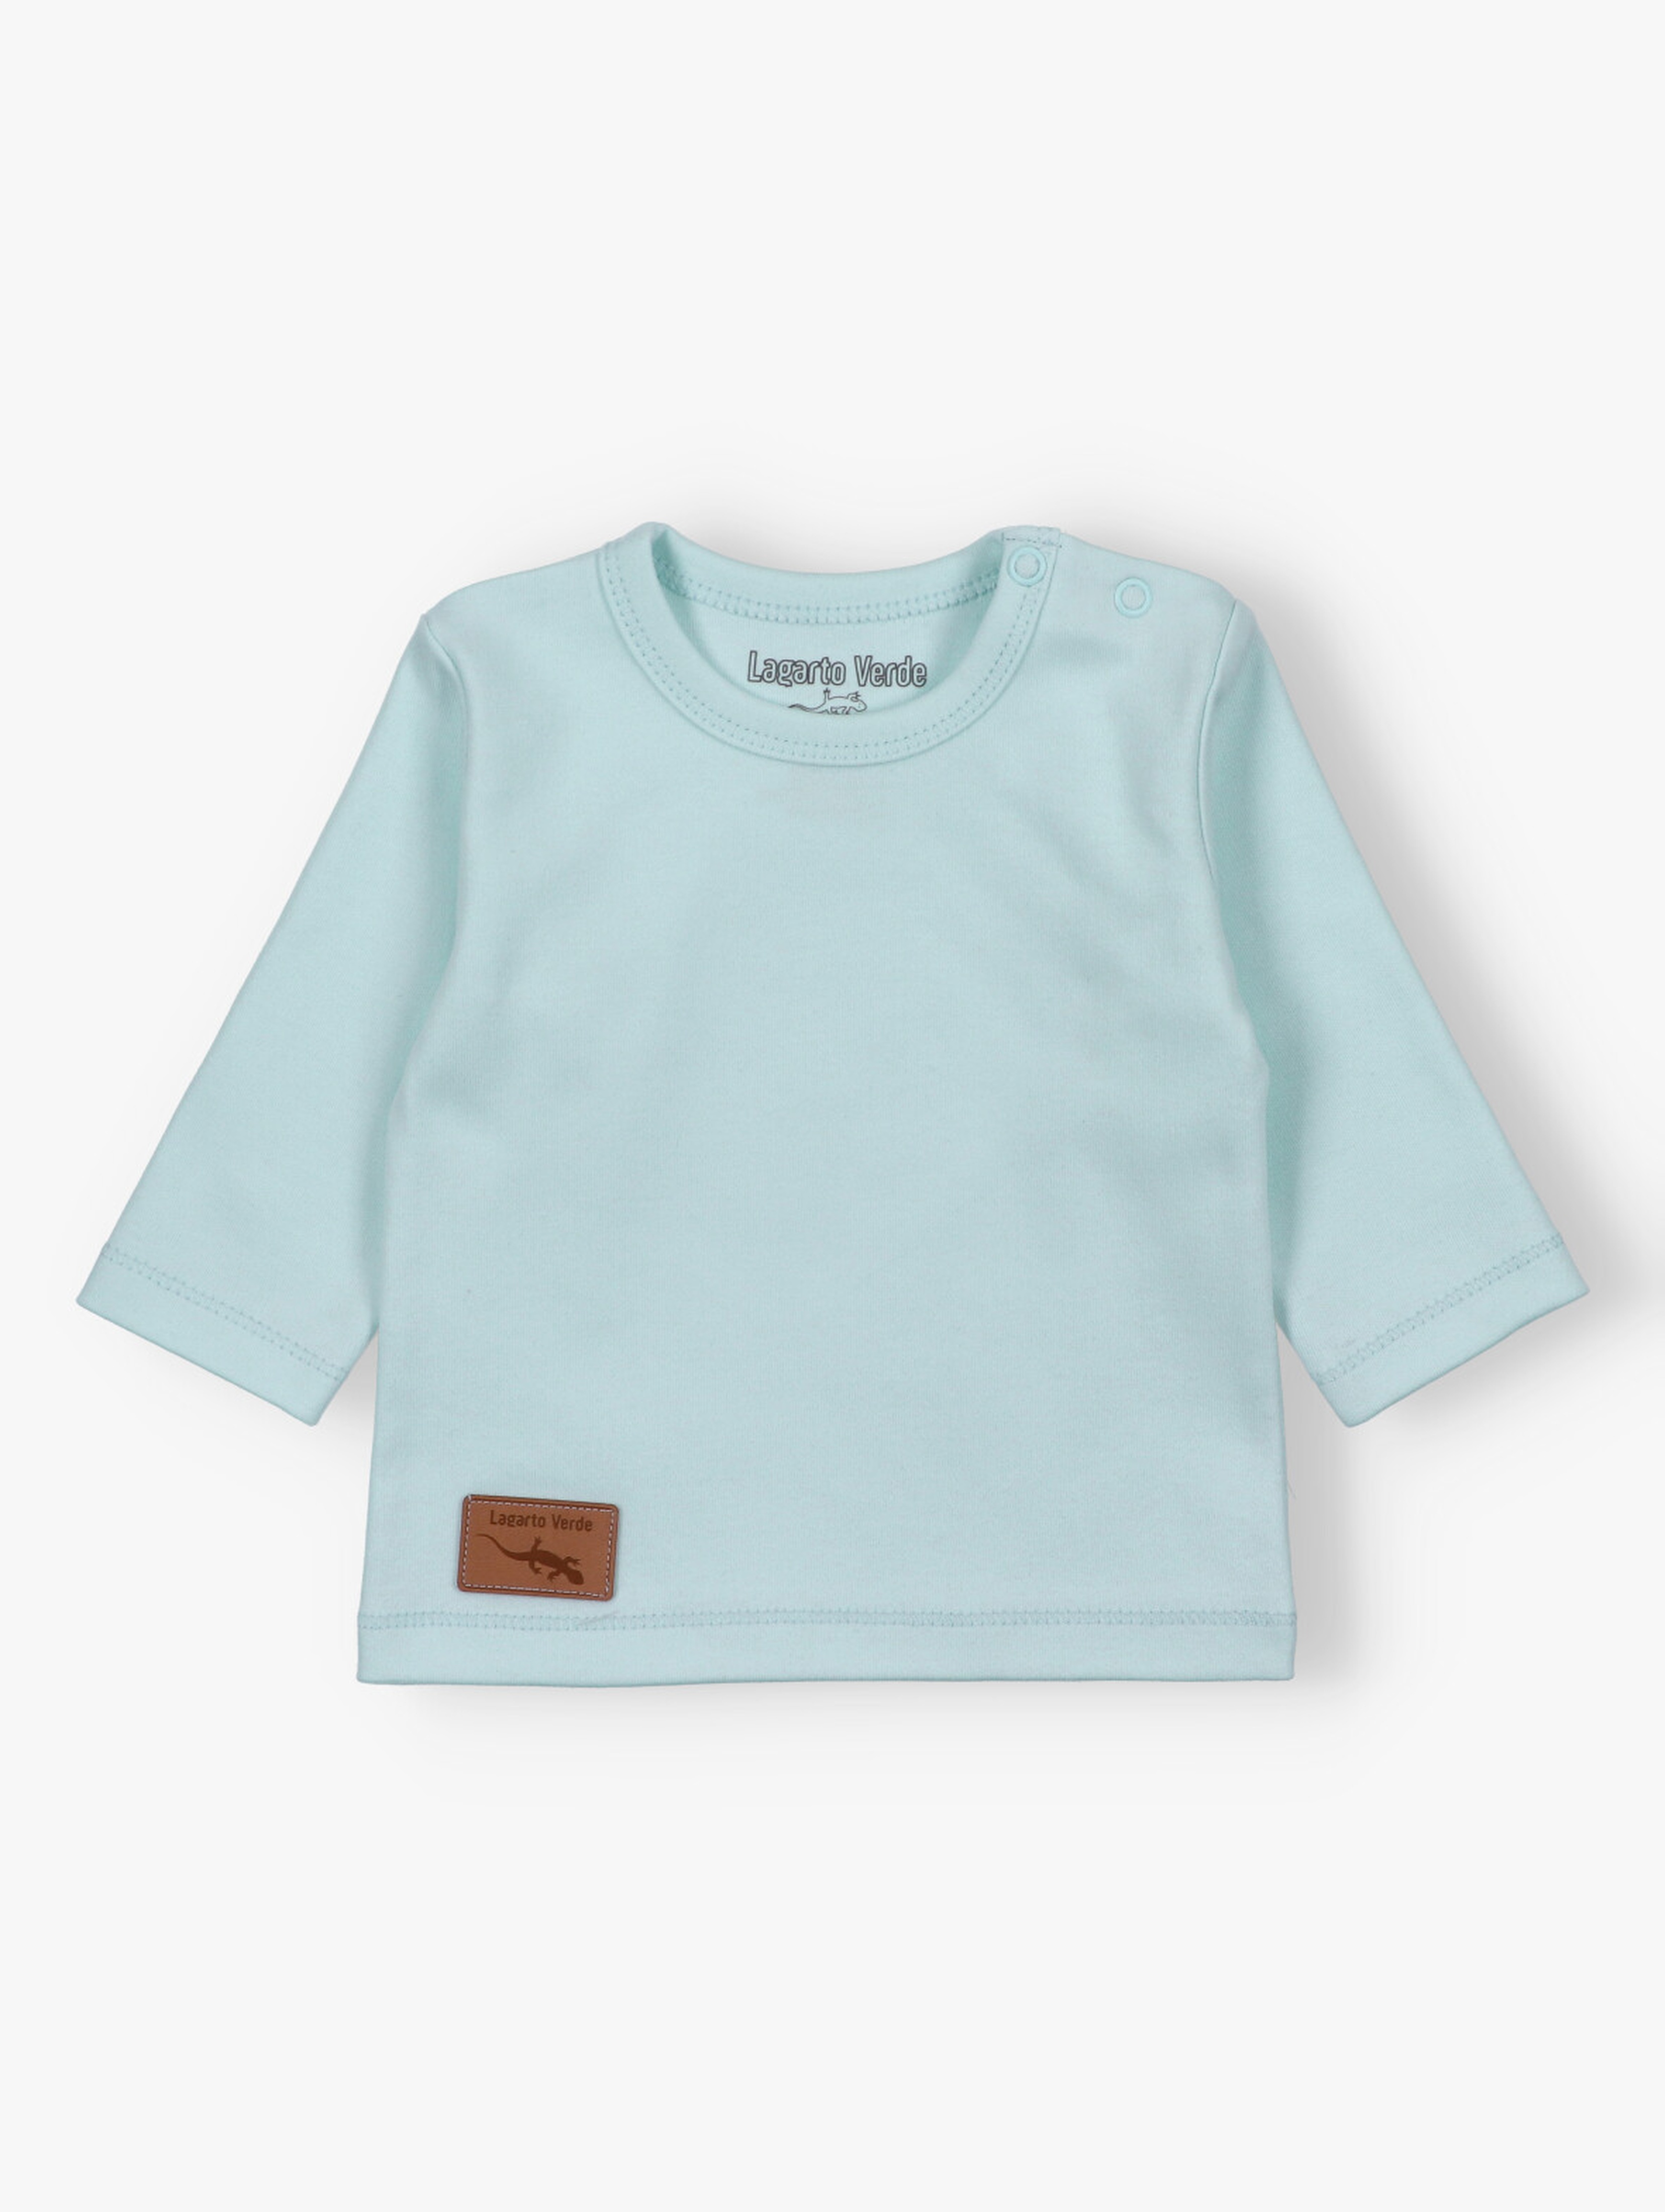 Dziewczęca bluzka niemowlęca - różowa -  Lagarto Verde